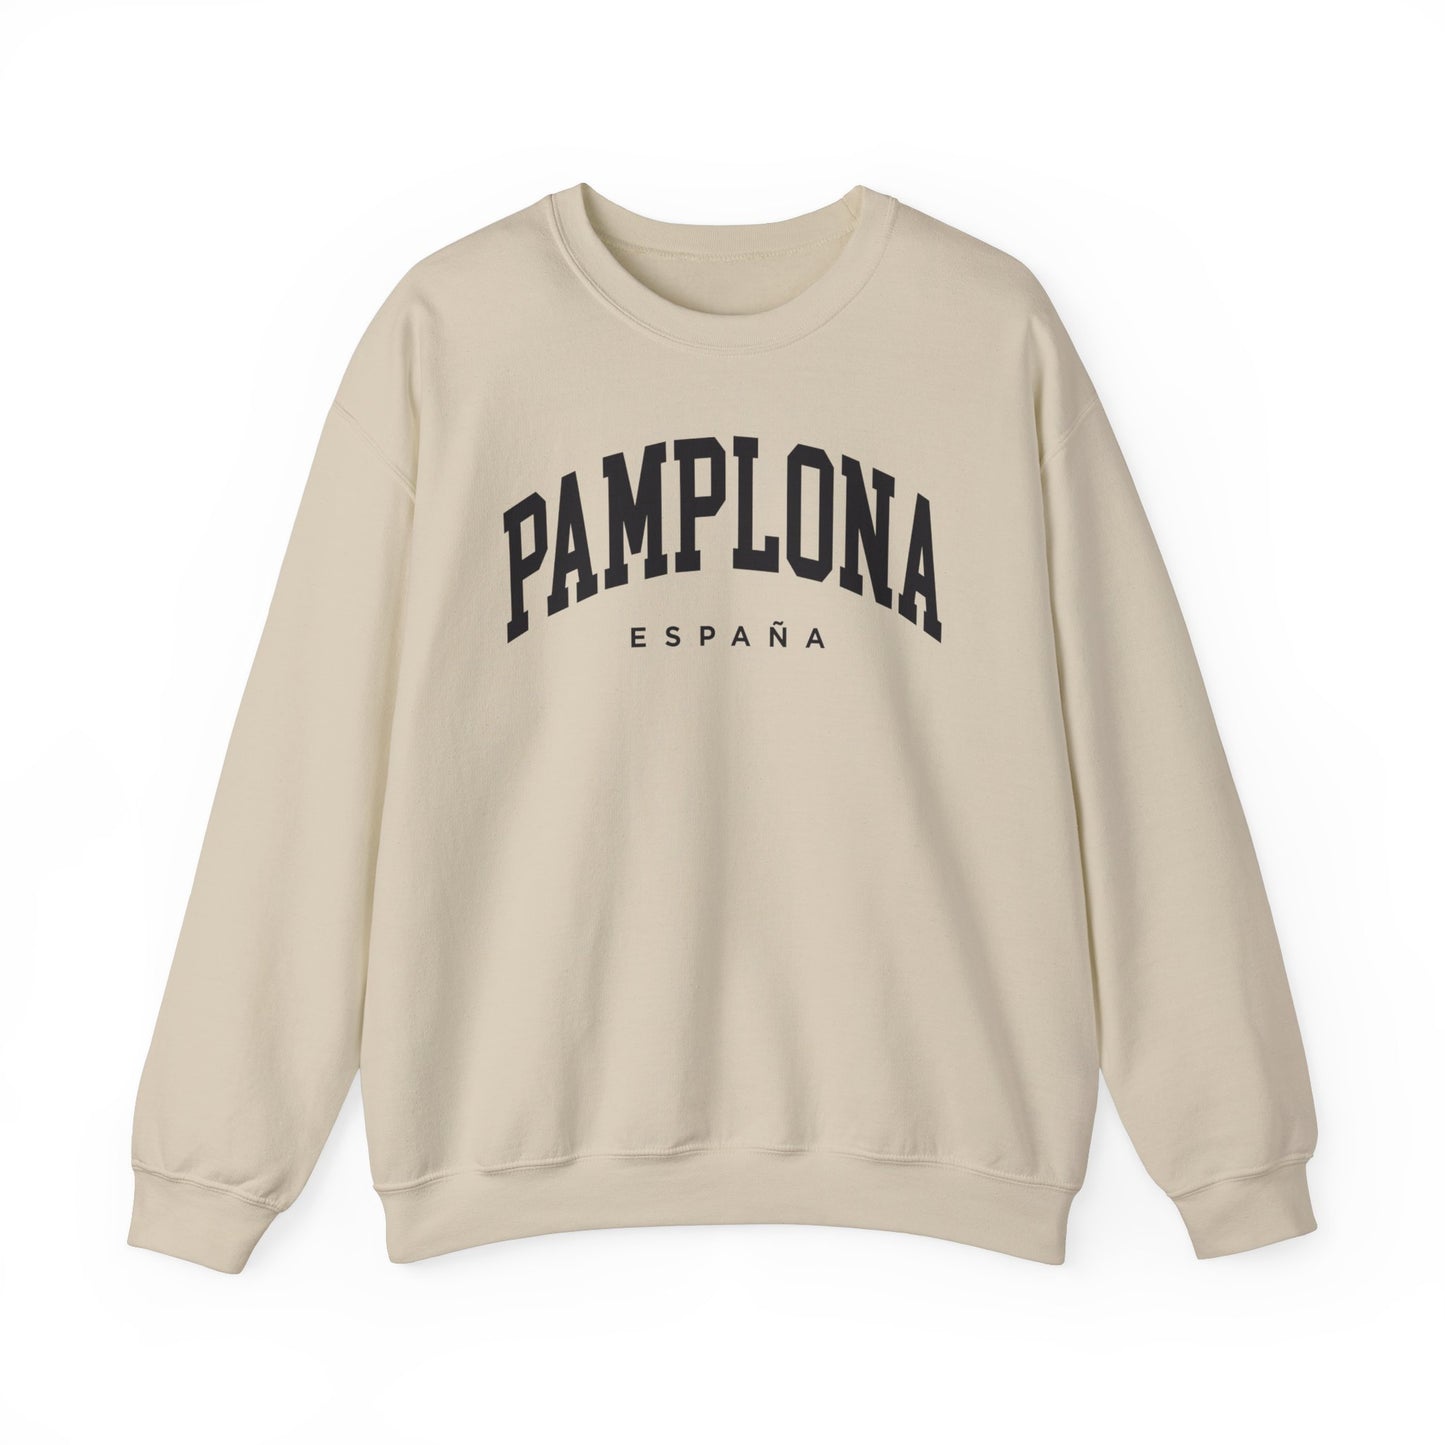 Pamplona Spain Sweatshirt